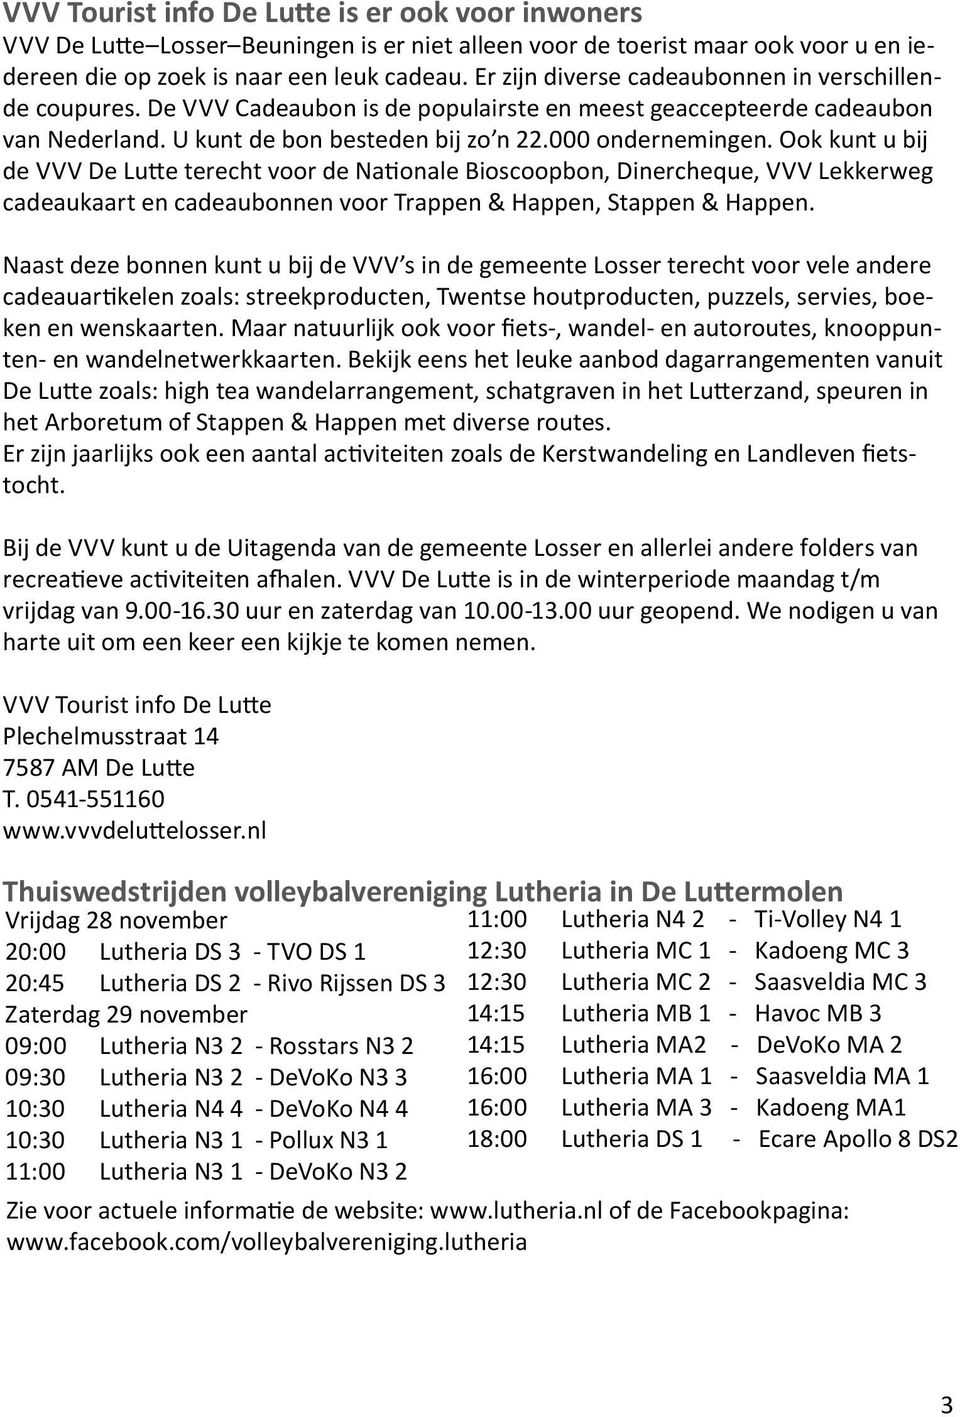 Ook kunt u bij de VVV De Lutte terecht voor de Nationale Bioscoopbon, Dinercheque, VVV Lekkerweg cadeaukaart en cadeaubonnen voor Trappen & Happen, Stappen & Happen.